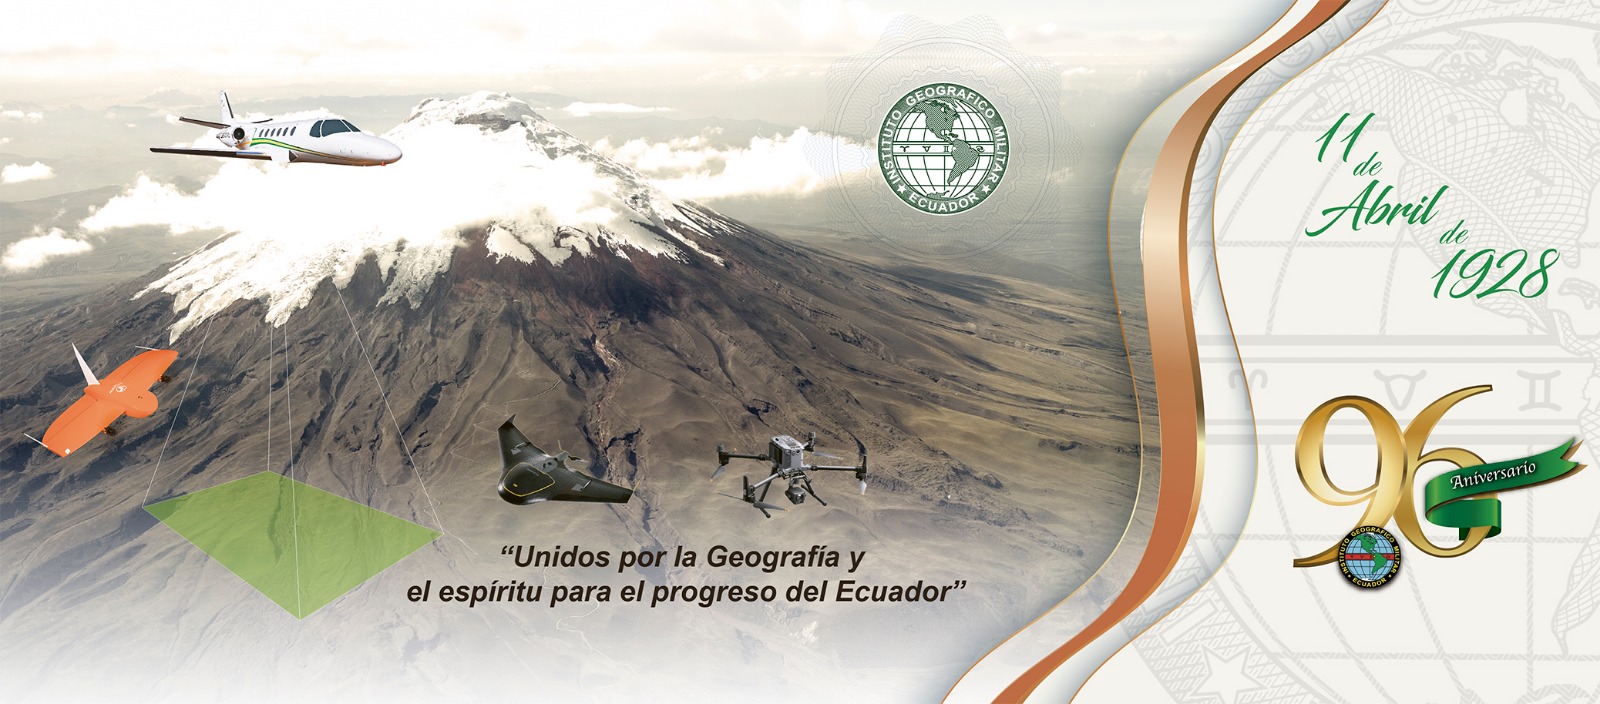 11 de abril, Nonagésimo Sexto Aniversario del Instituto Geográfico Militar